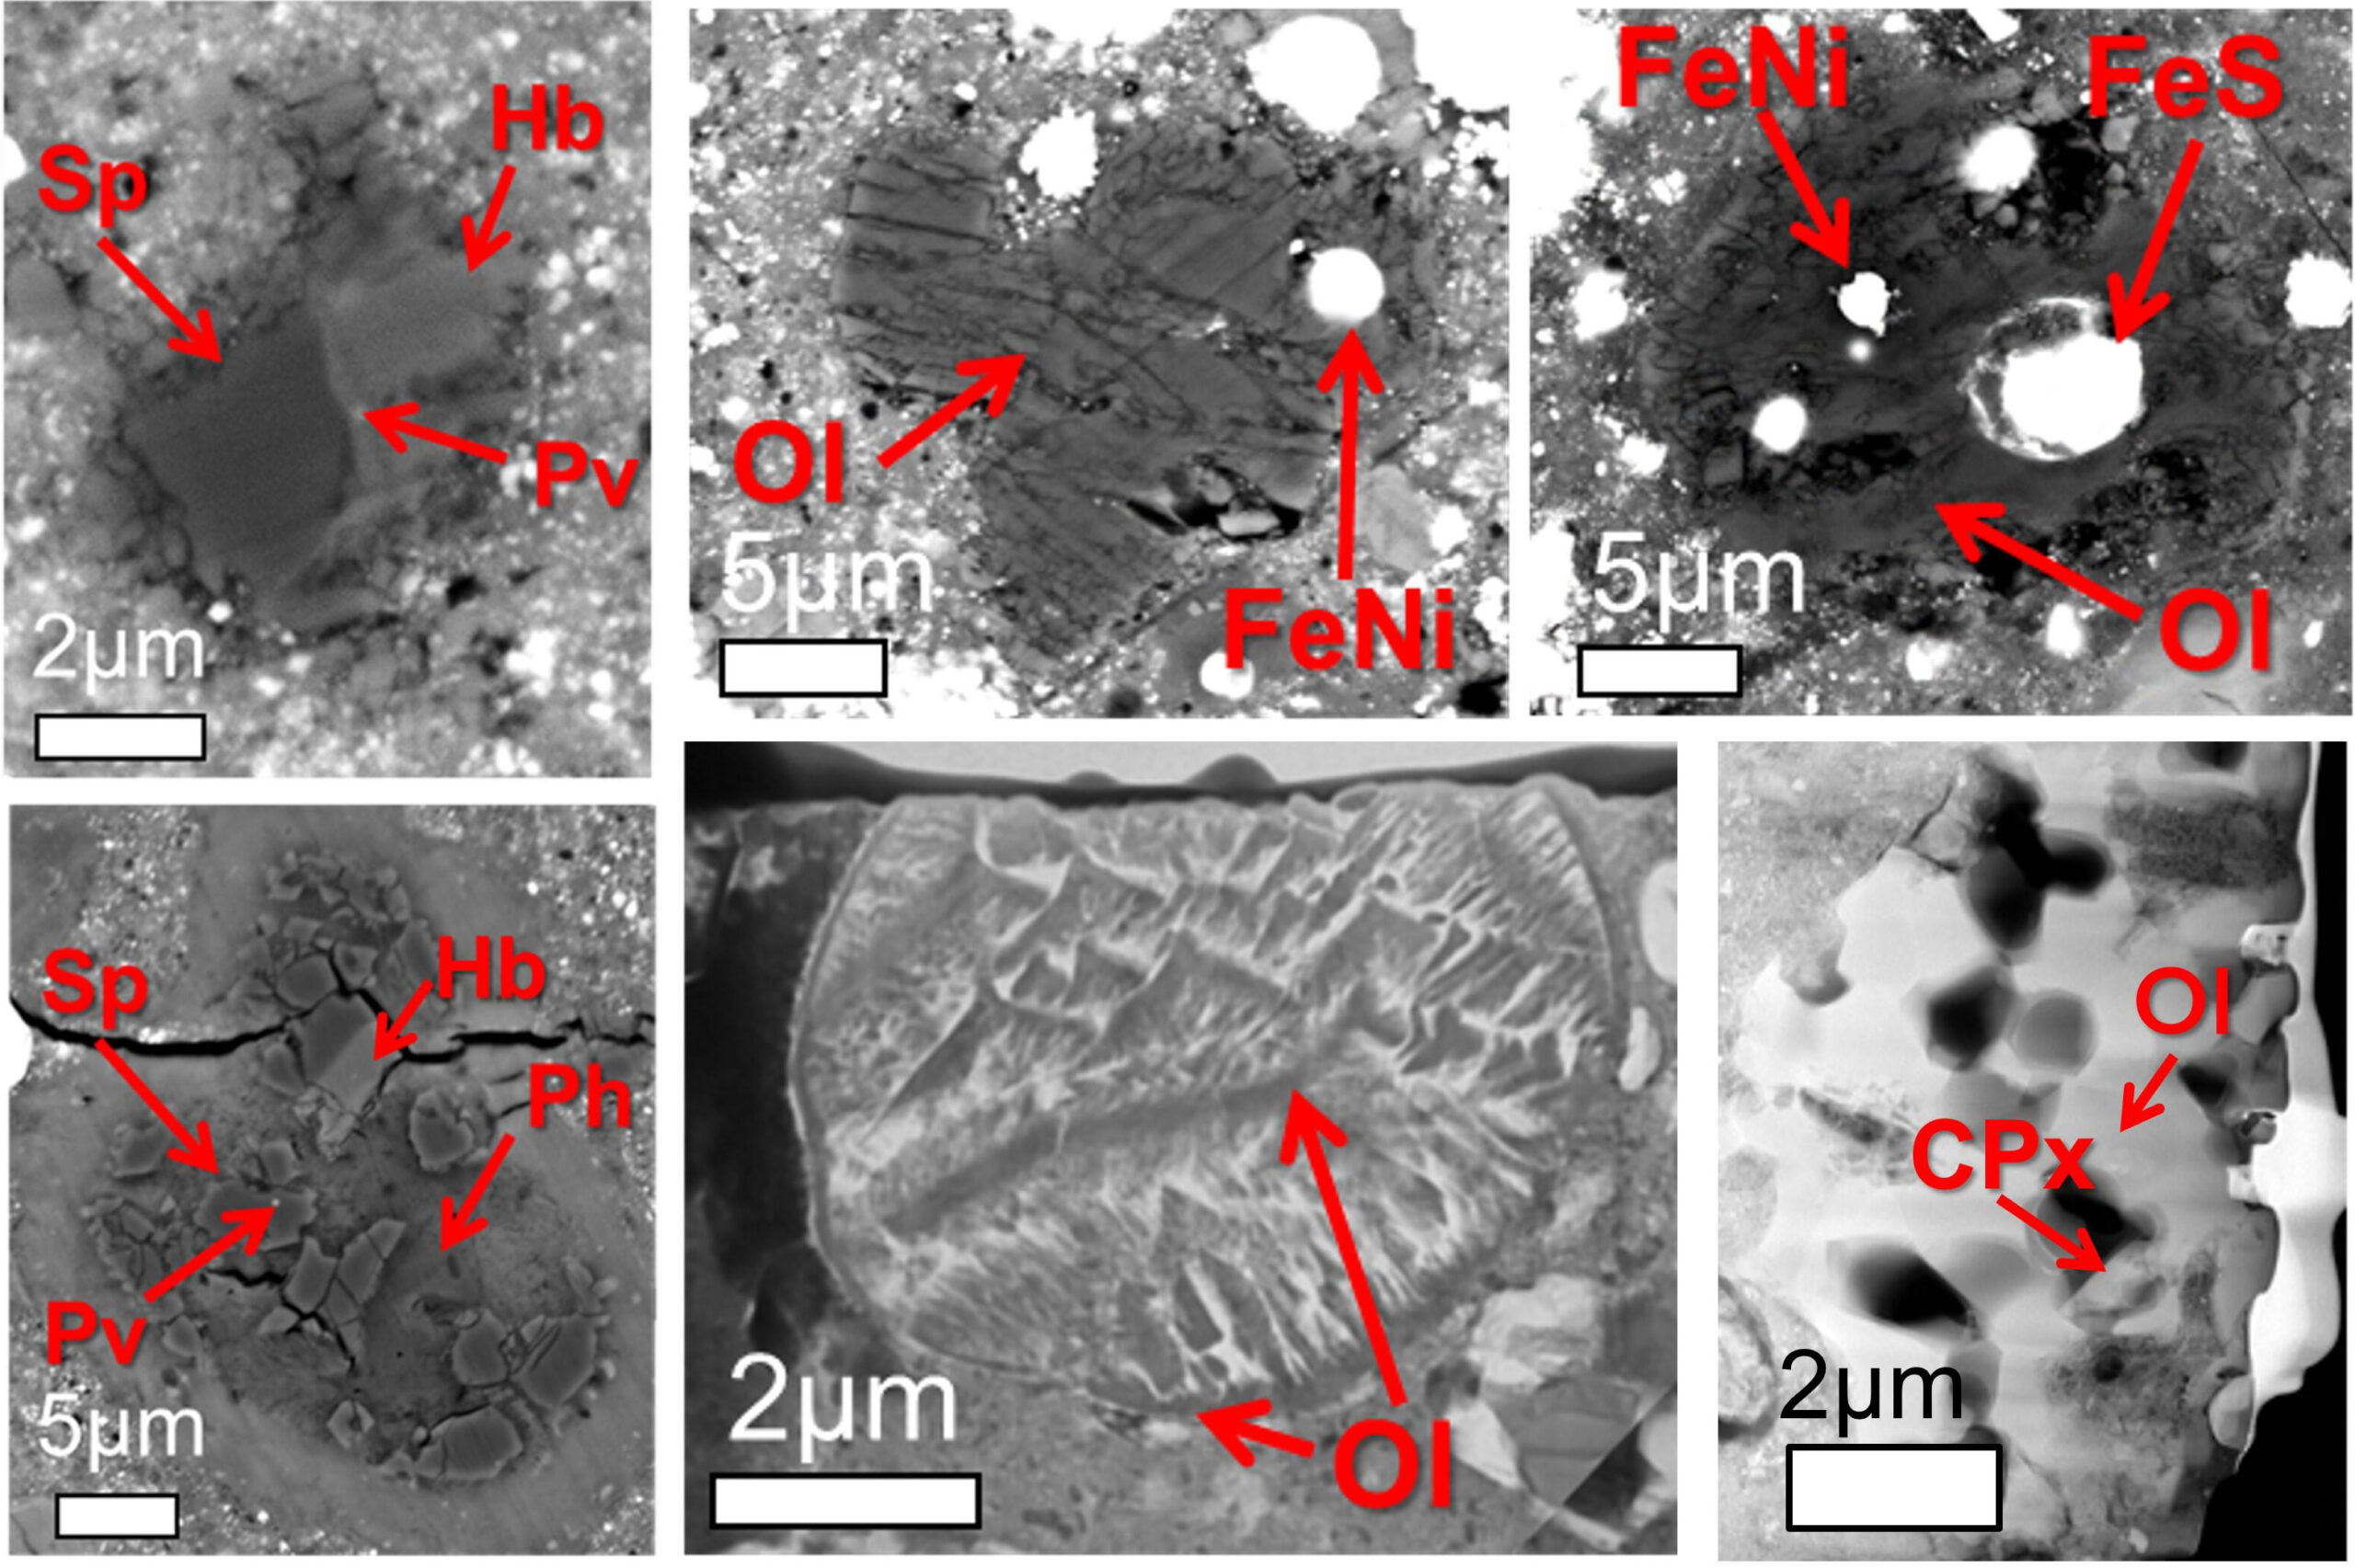 在 Ryugu 樣品中發現的高溫環境（超過 1000°C）中形成的顆粒（所有電子顯微照片）。 (A, B) 富含鈣和鋁的夾雜物，(B-D) 由熔融橄欖石 (Ol)、金屬鐵 (FeNi) 和硫化鐵 (FeS) 形成的球粒，(F) 類似於石頭聚集體的多孔顆粒